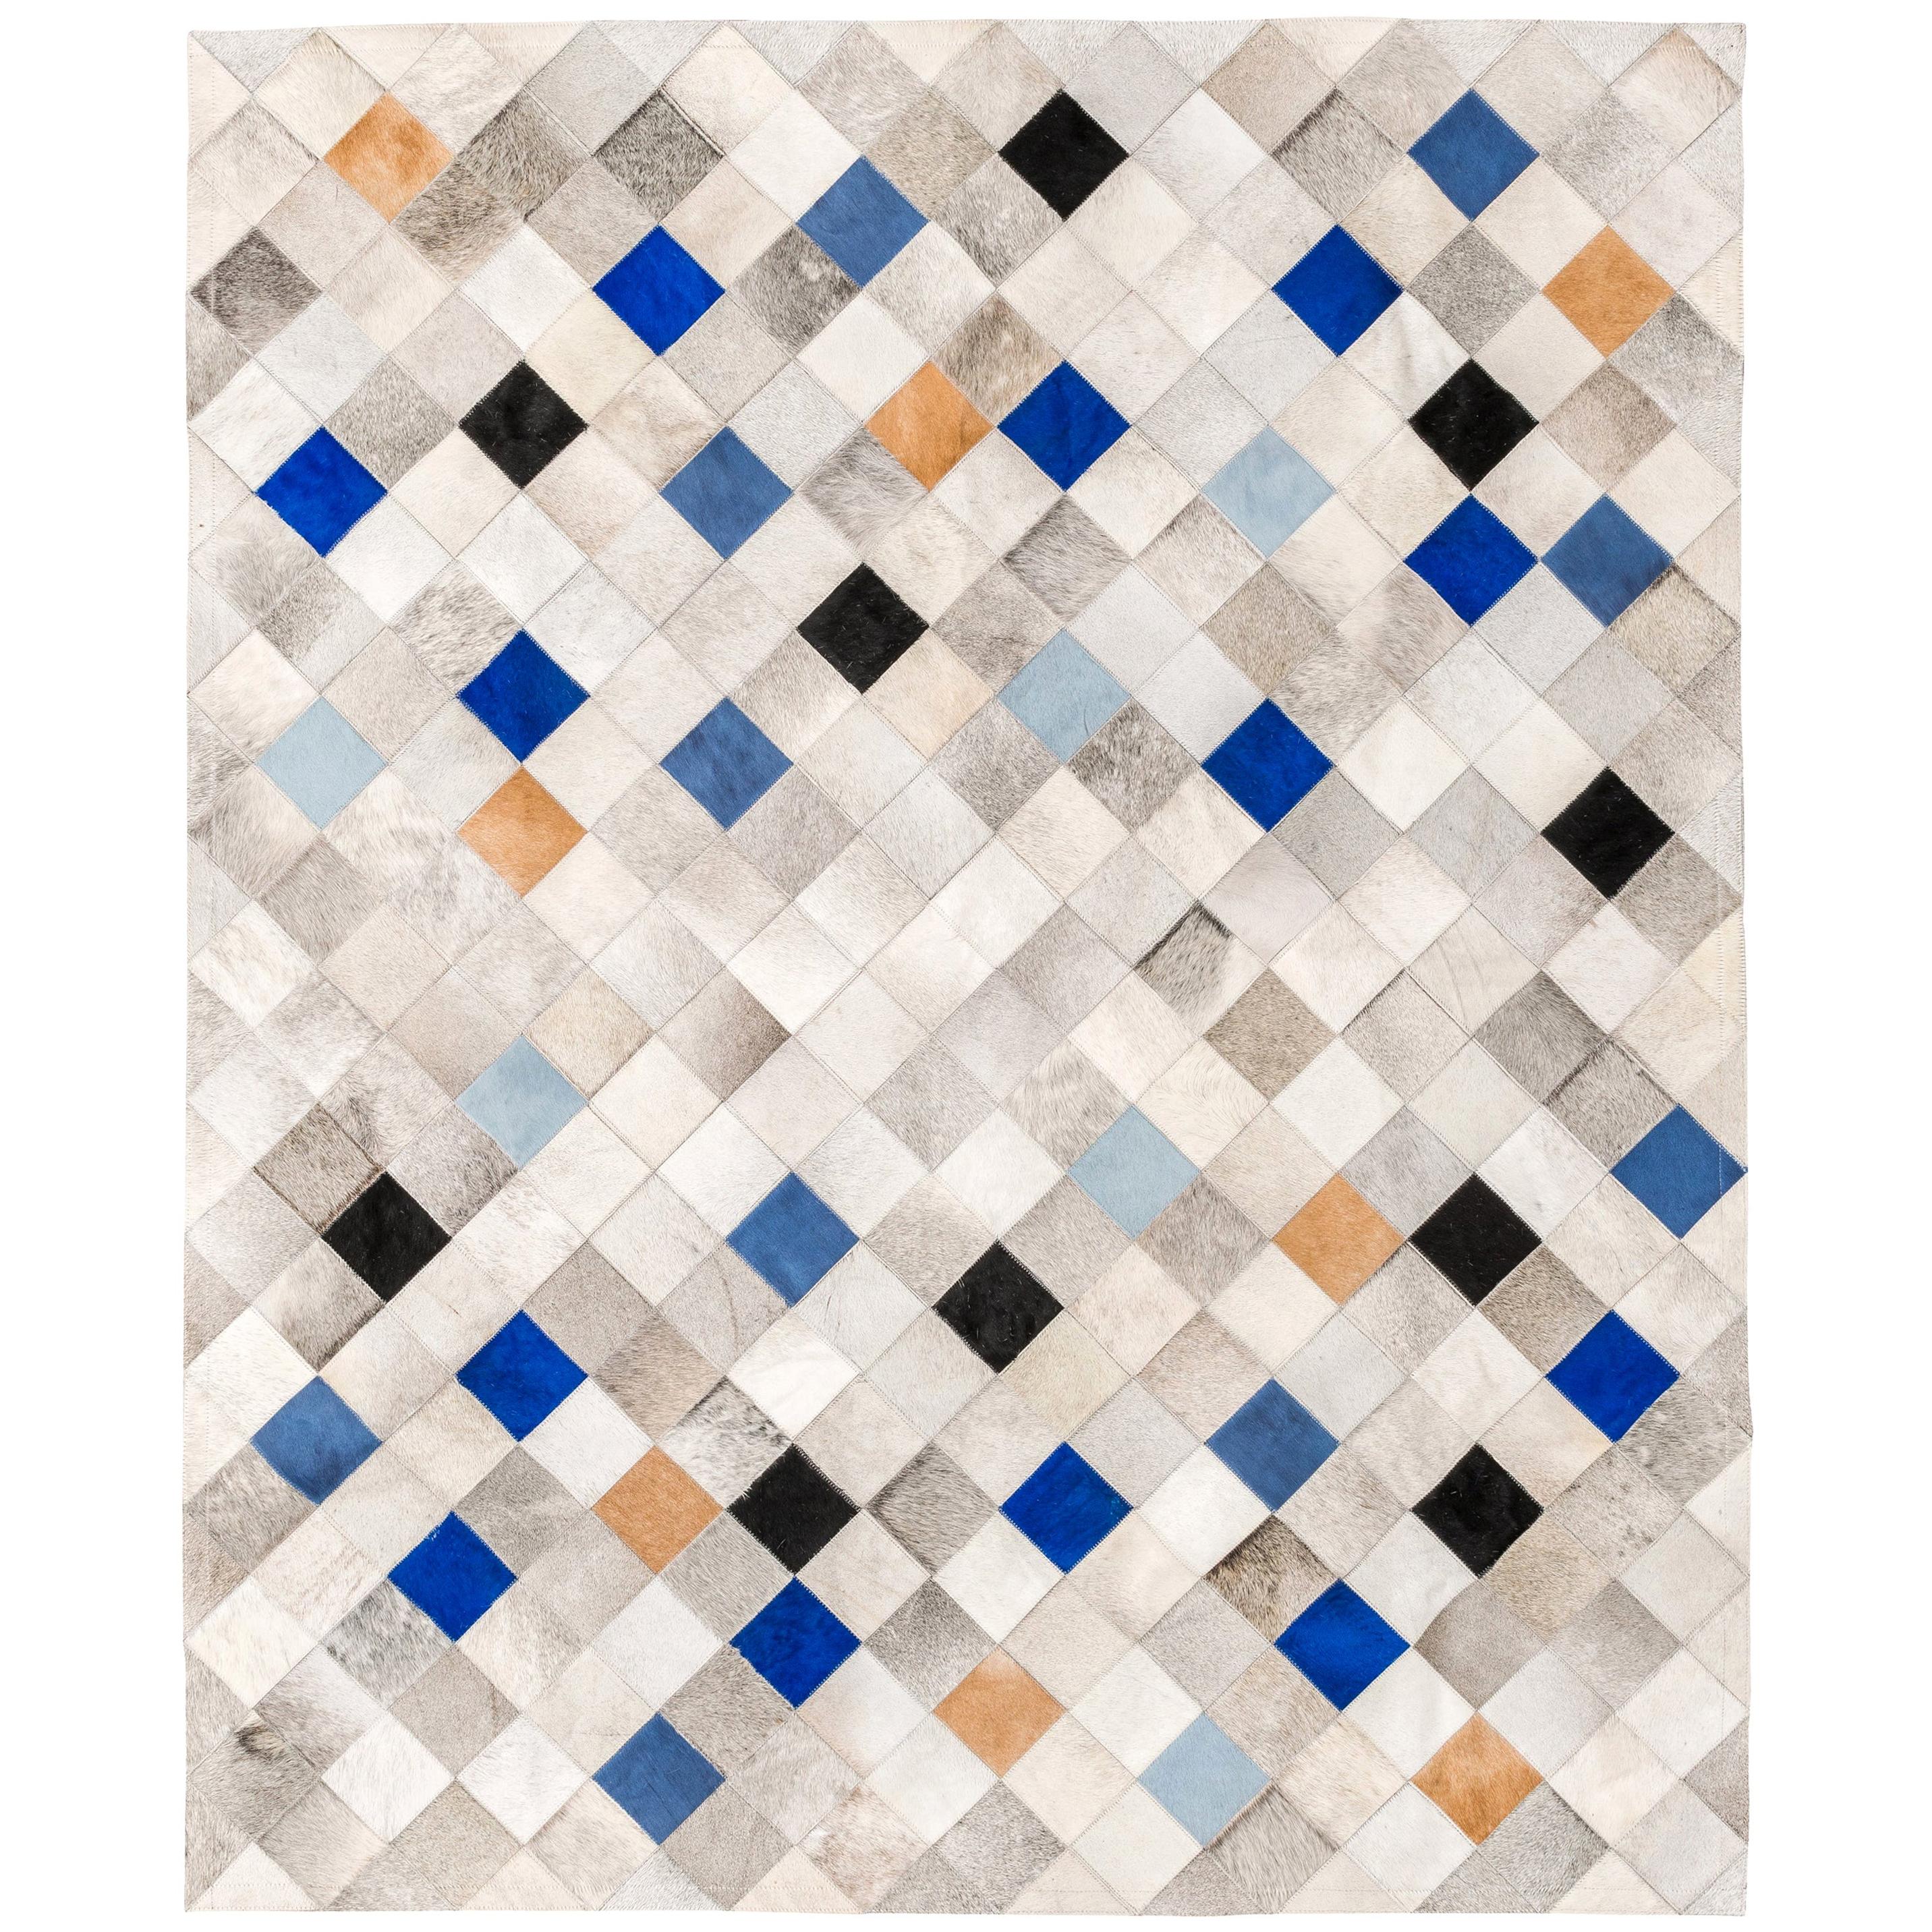 Cowhide-Bodenteppich XX-groß in Grau, Blau und Karamell mit fallenden Quadraten